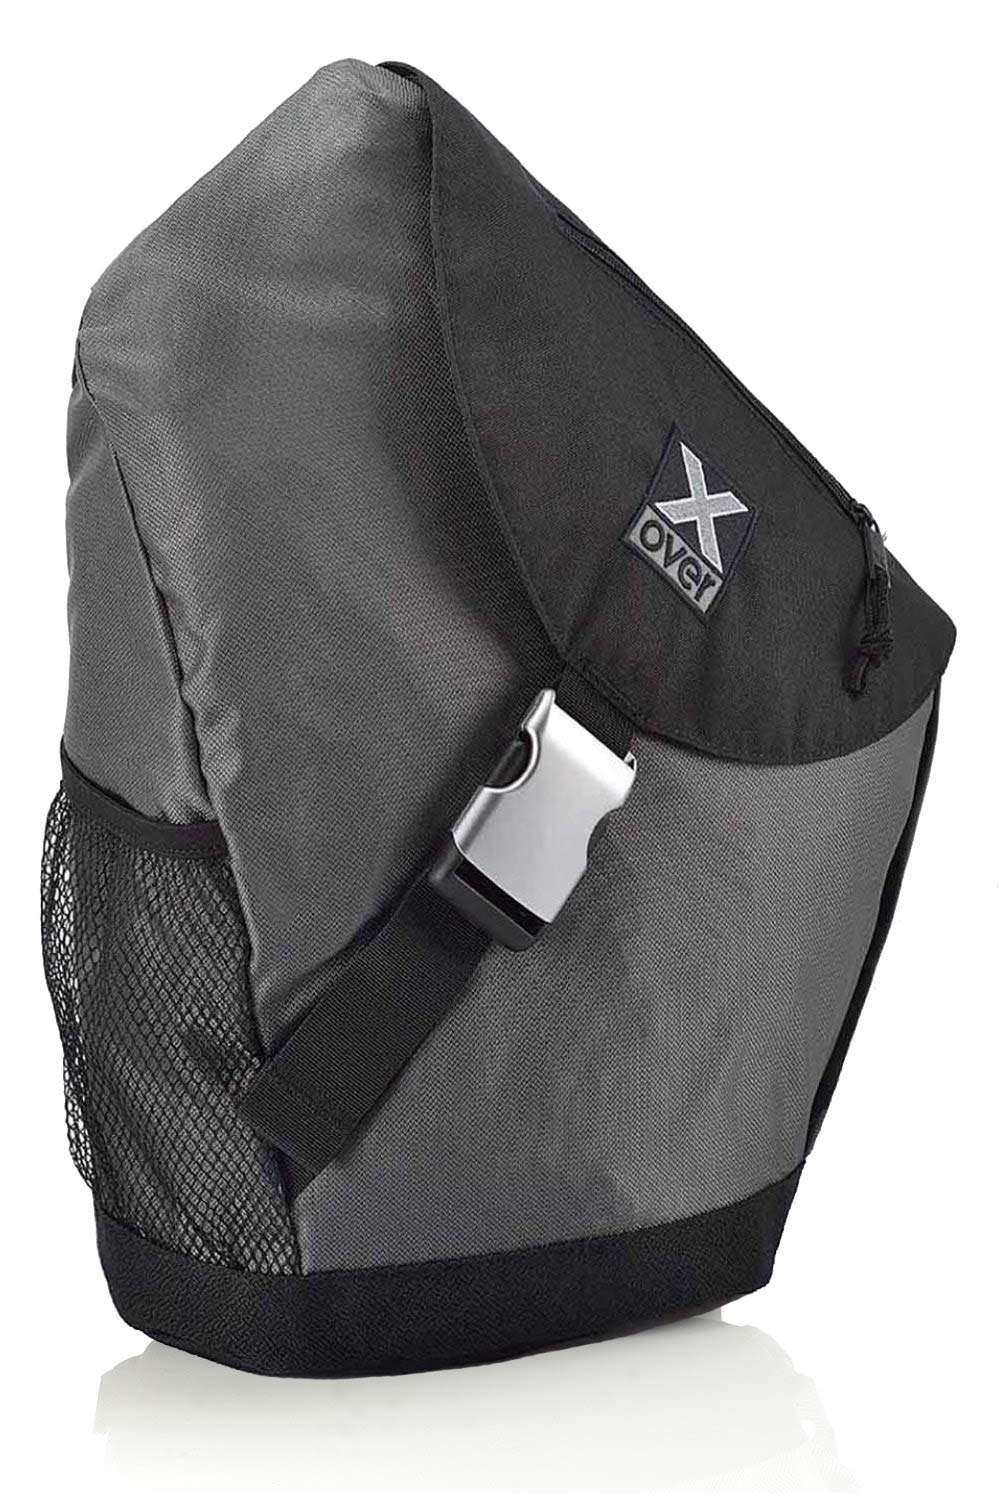 X-over Barcelona bag in color dark grey